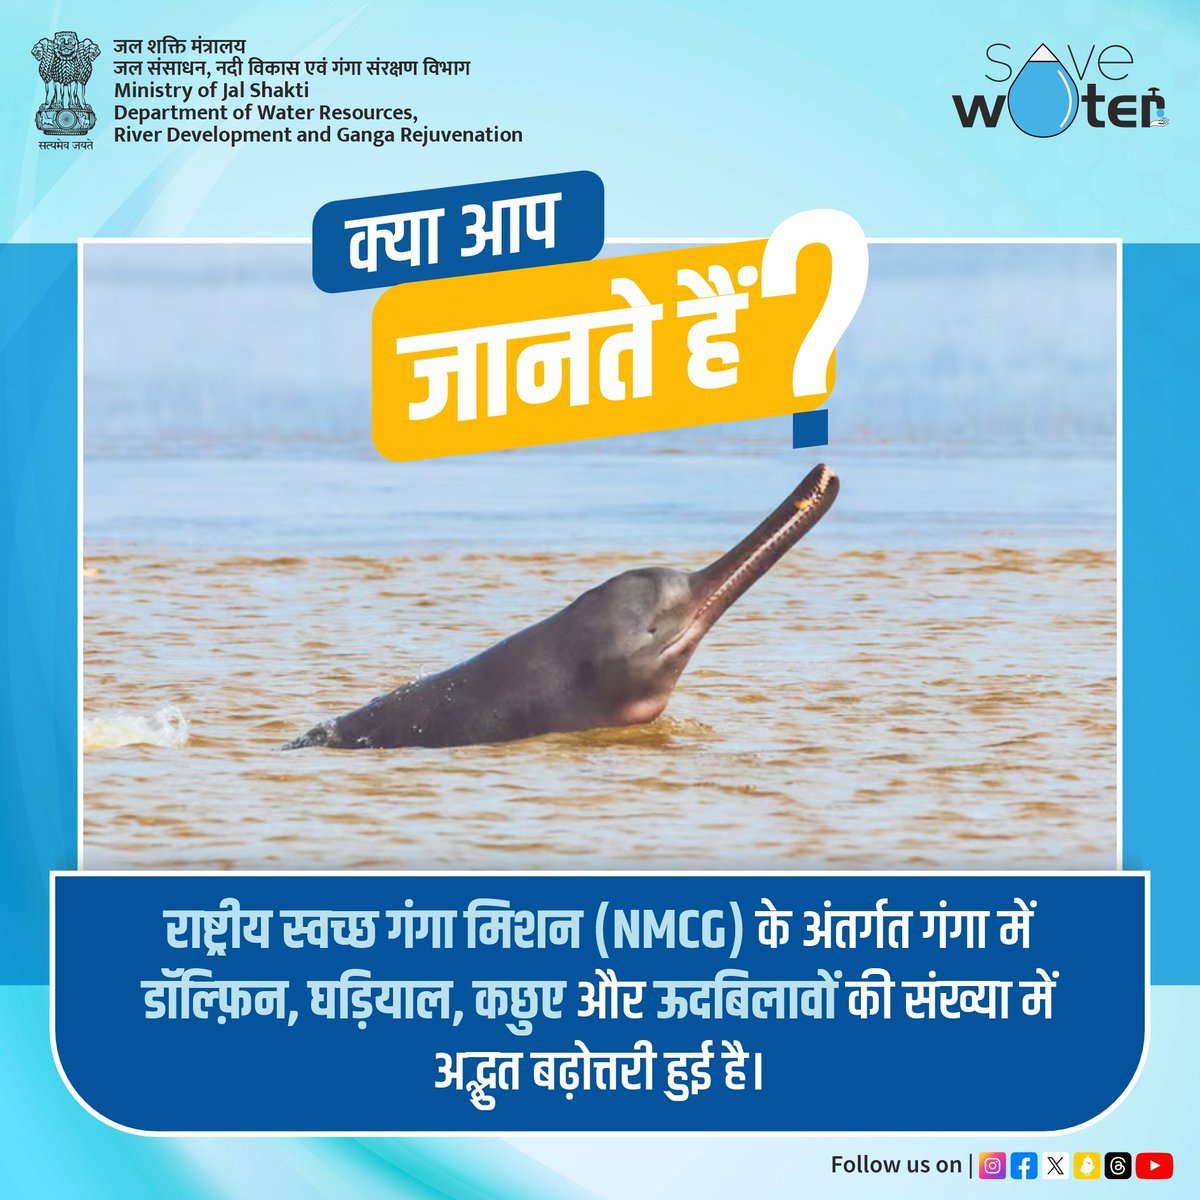 राष्ट्रीय स्वच्छ गंगा मिशन जल शक्ति मंत्रालय की एक प्रमुख योजना है। इसका उद्देश्य प्रदूषण को कम करना और गंगा नदी की स्वच्छता सुनिश्चित करना है। इस मिशन की उपलब्धि के स्वरूप गंगा में डॉल्फ़िन, घड़ियाल, कछुए और ऊदबिलावों की संख्या में सराहनीय बढ़ोत्तरी हुई है। #DidYouKnow #NMCG